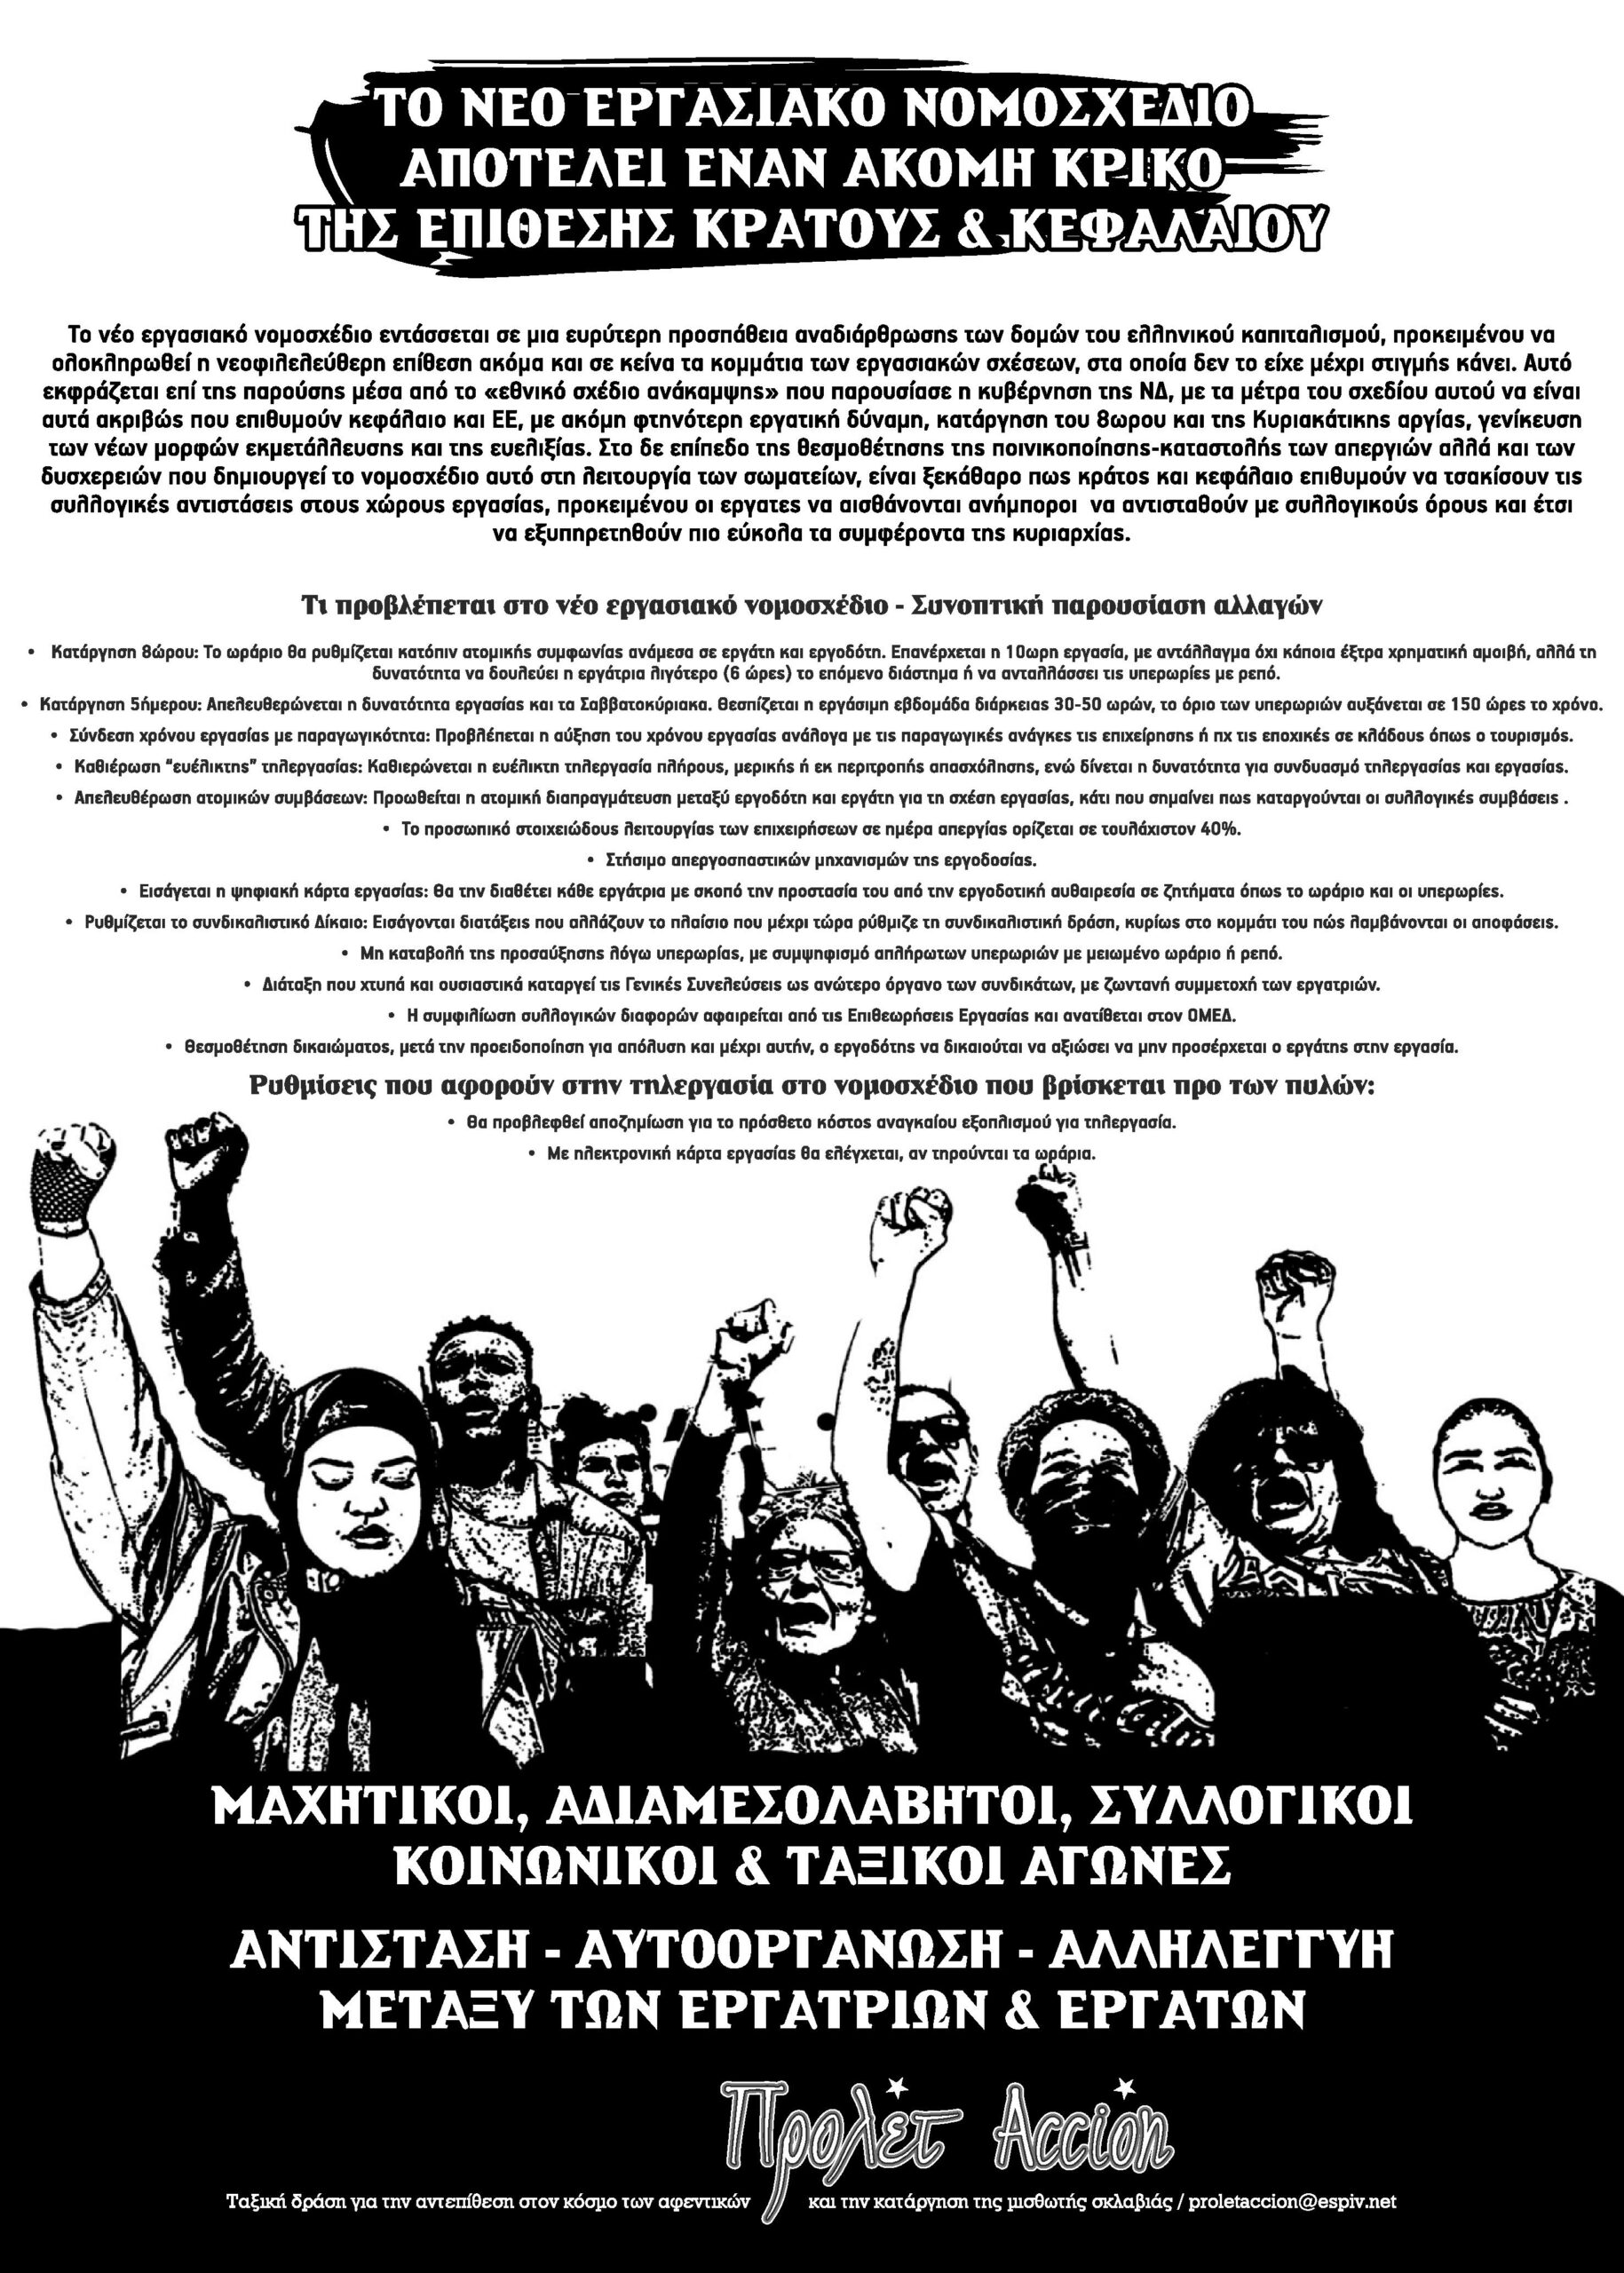 Πάτρα: Συγκέντρωση-εκδήλωση ενάντια στο νέο εργασιακό νομοσχέδιο